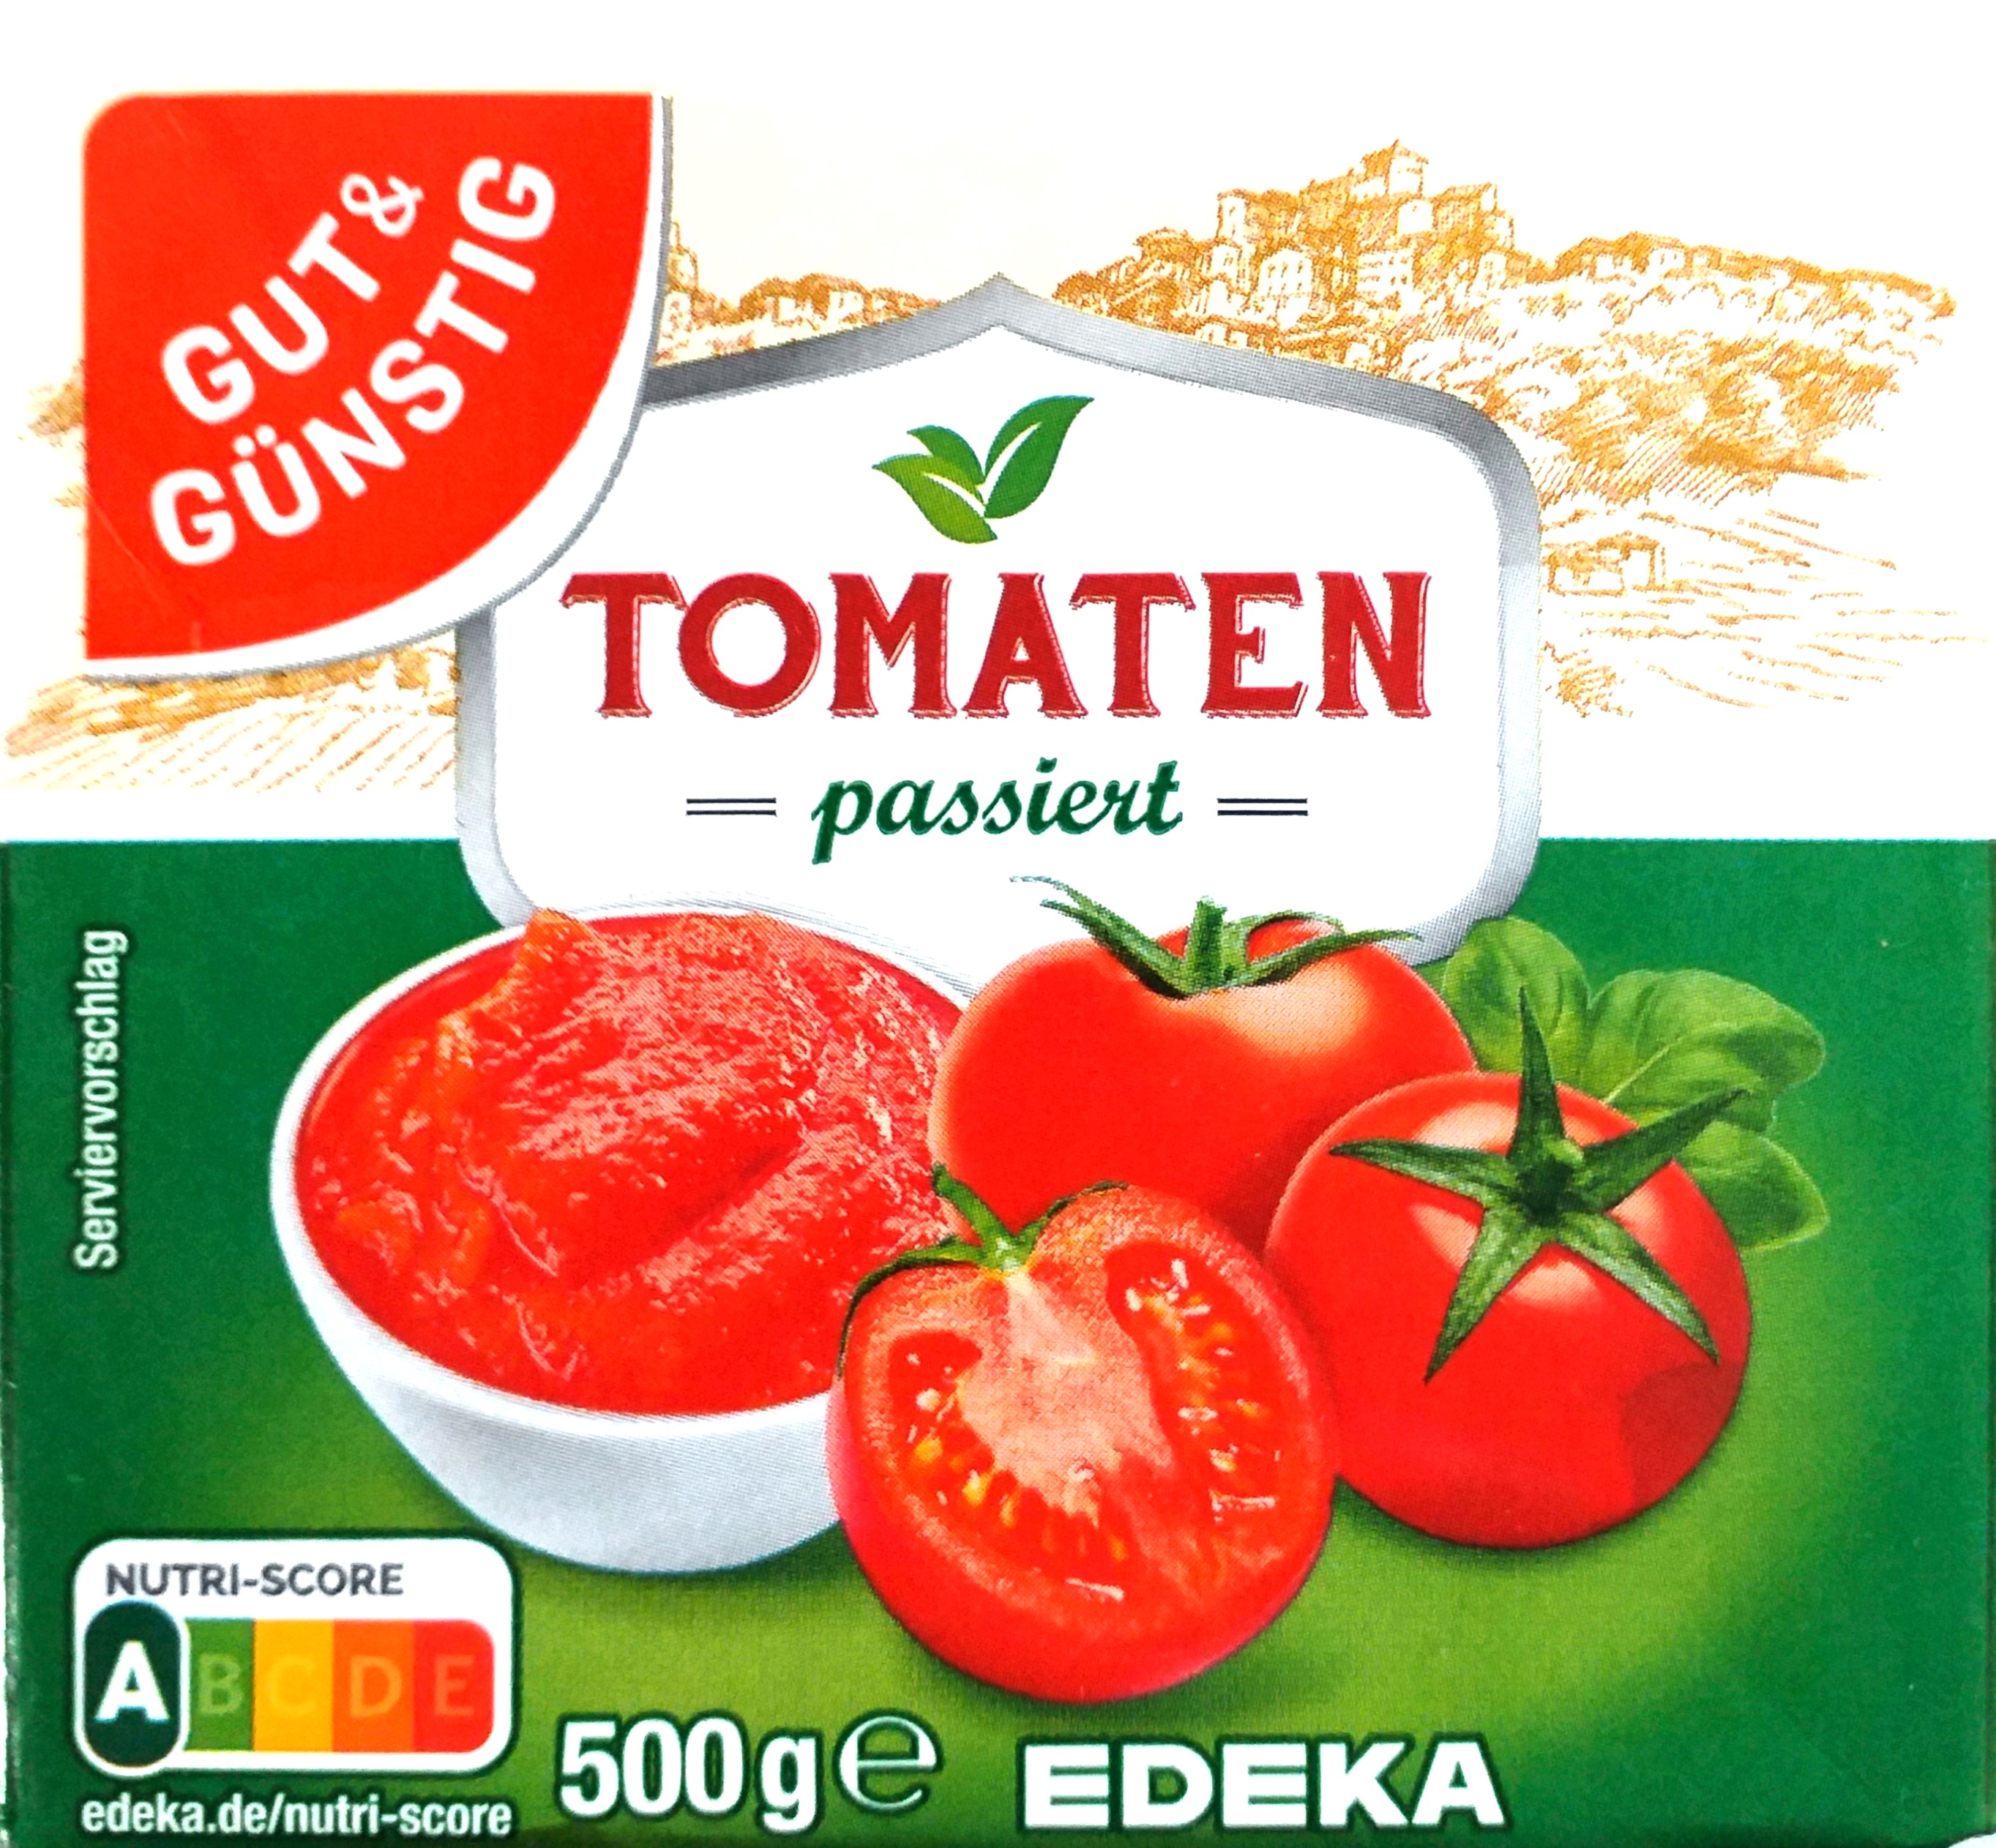 G&G Tomaten passiert 500g